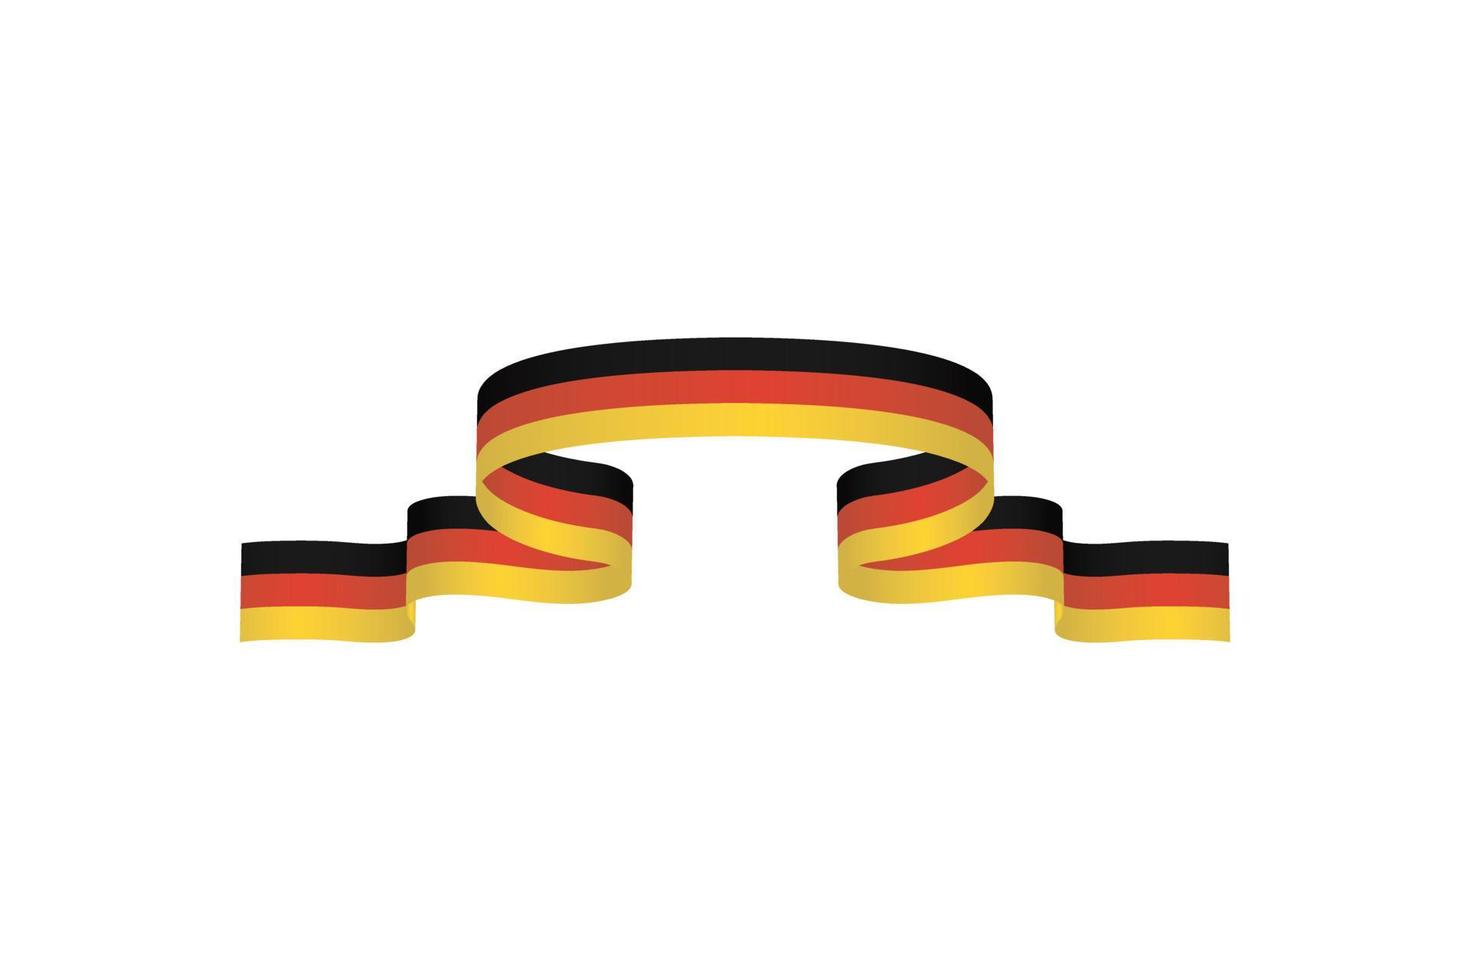 vlag lint met palet kleuren van Duitsland voor onafhankelijkheid dag viering decoratie vector